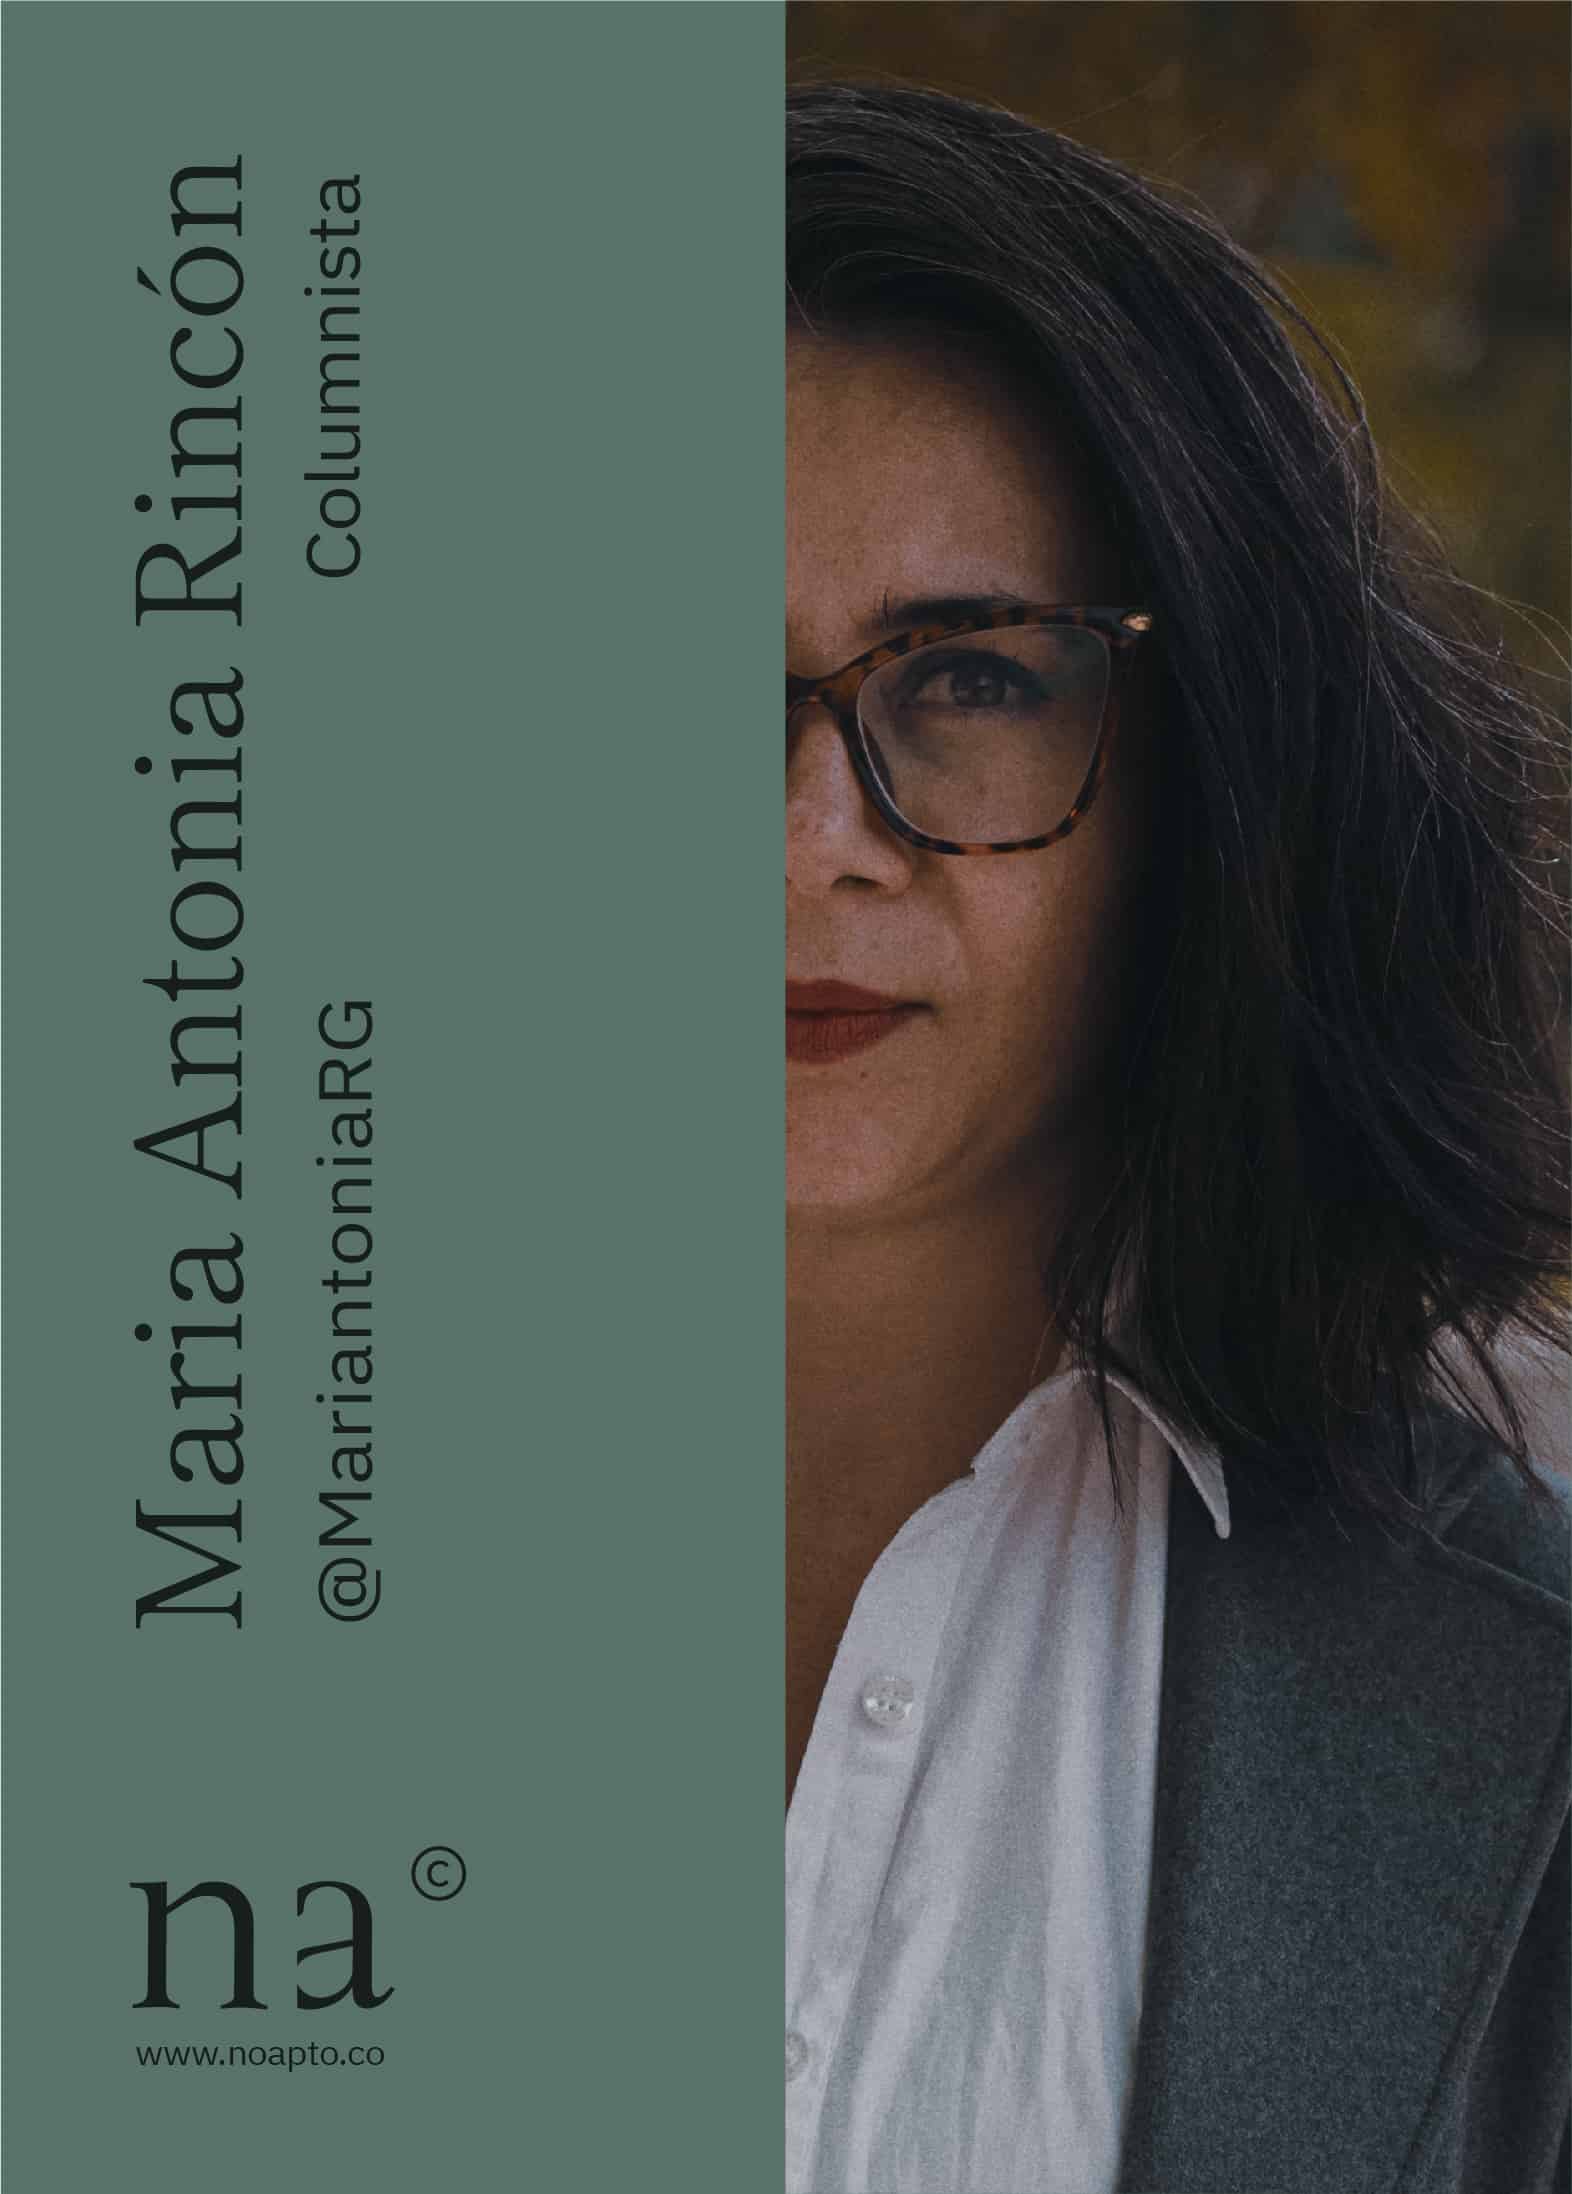 María Antonia Rincón